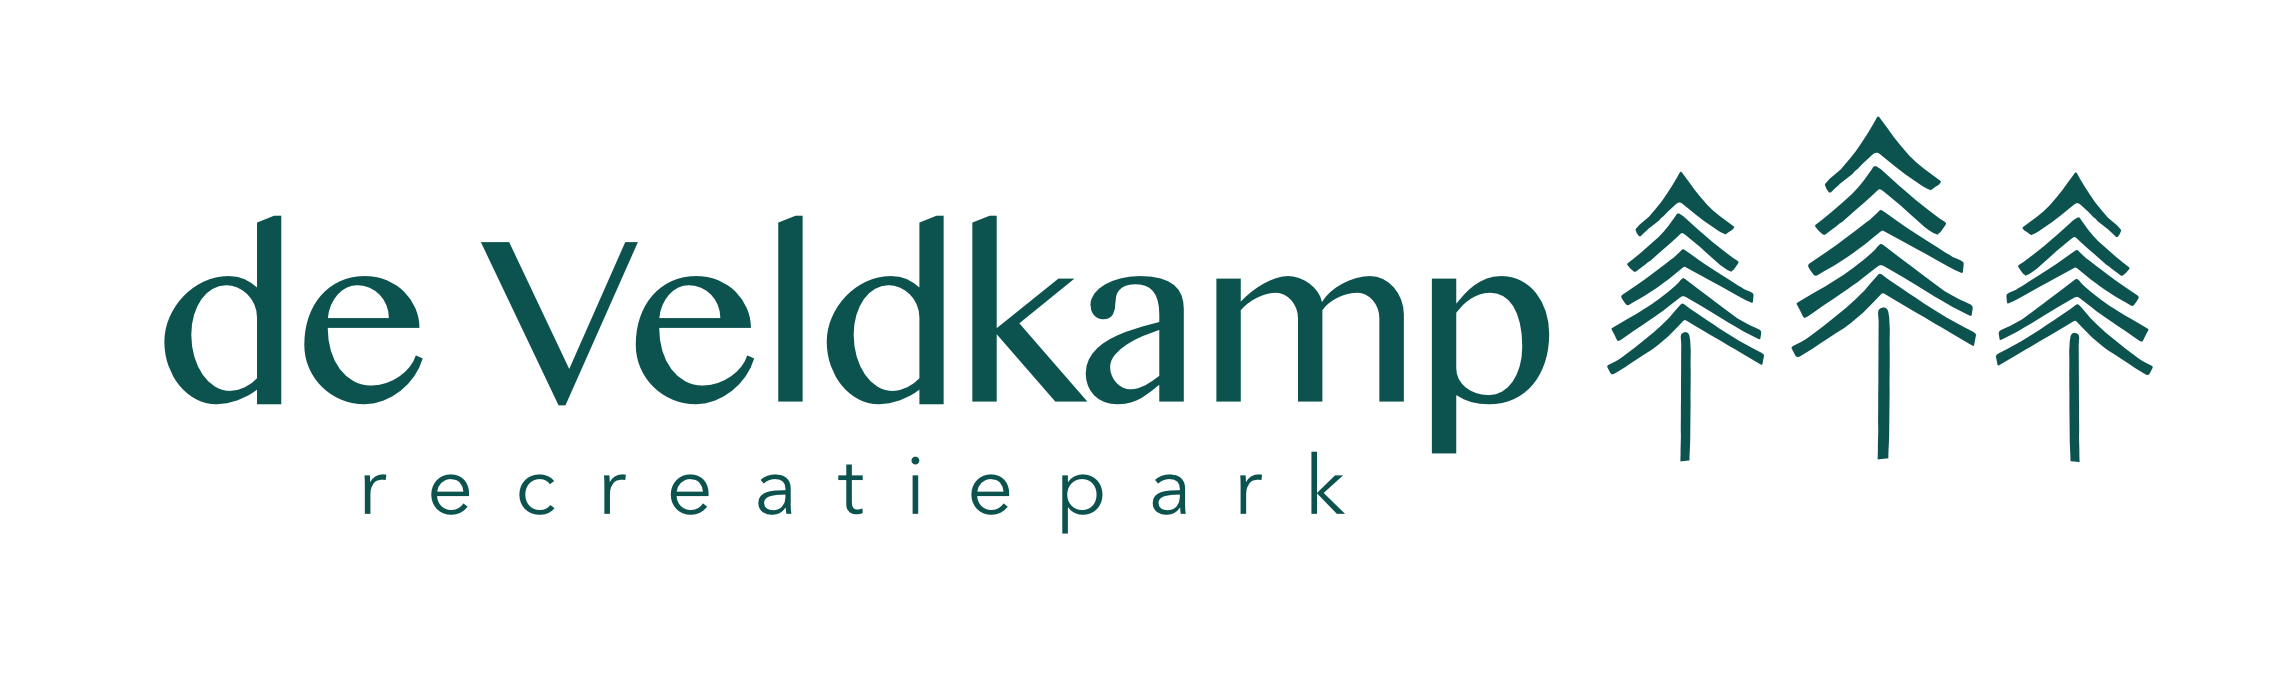 Recreatiepark de Veldkamp